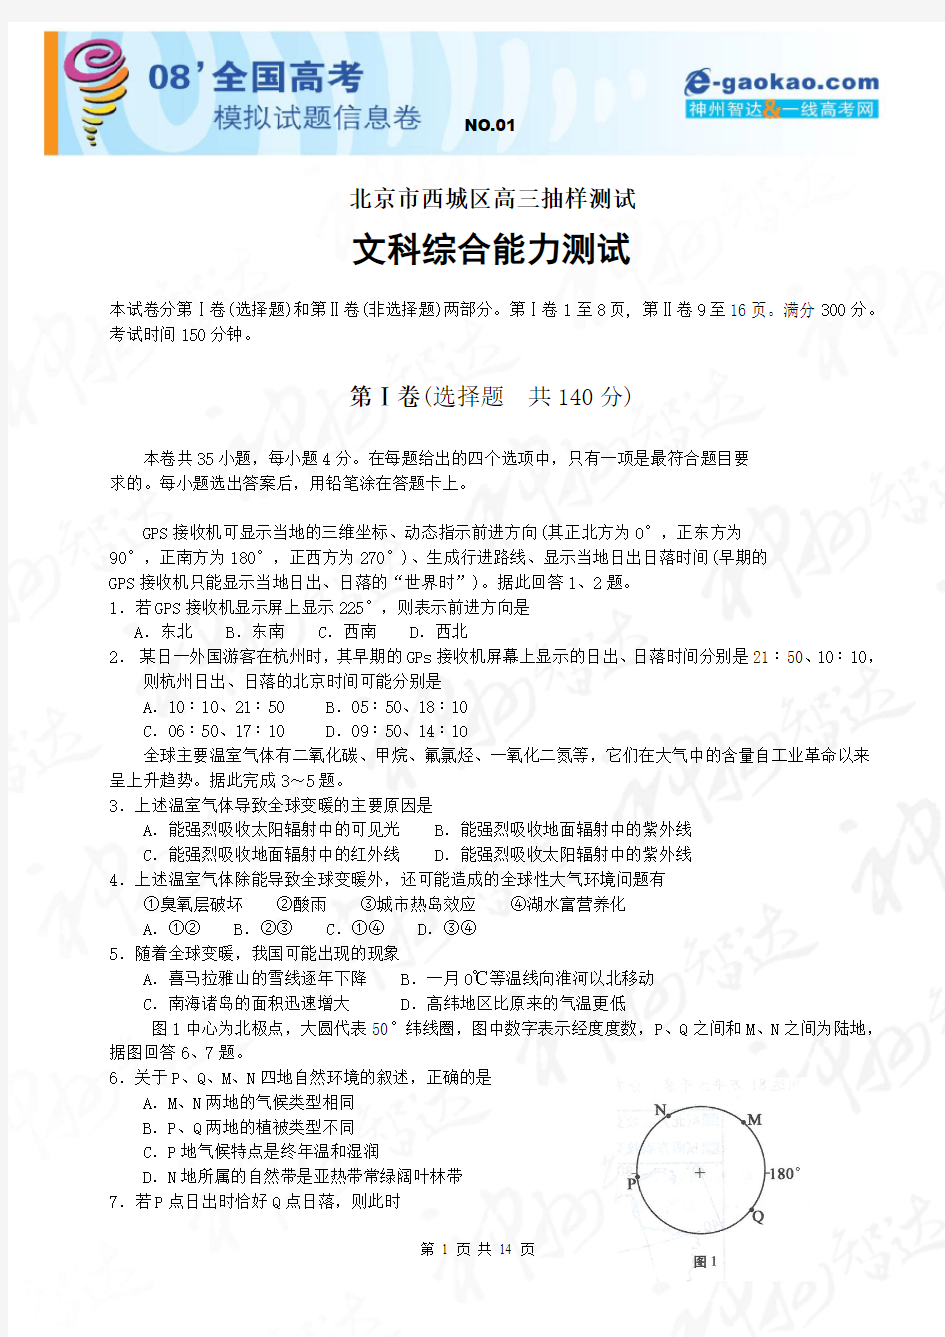 北京市西城区高三年级抽样测试(文综)